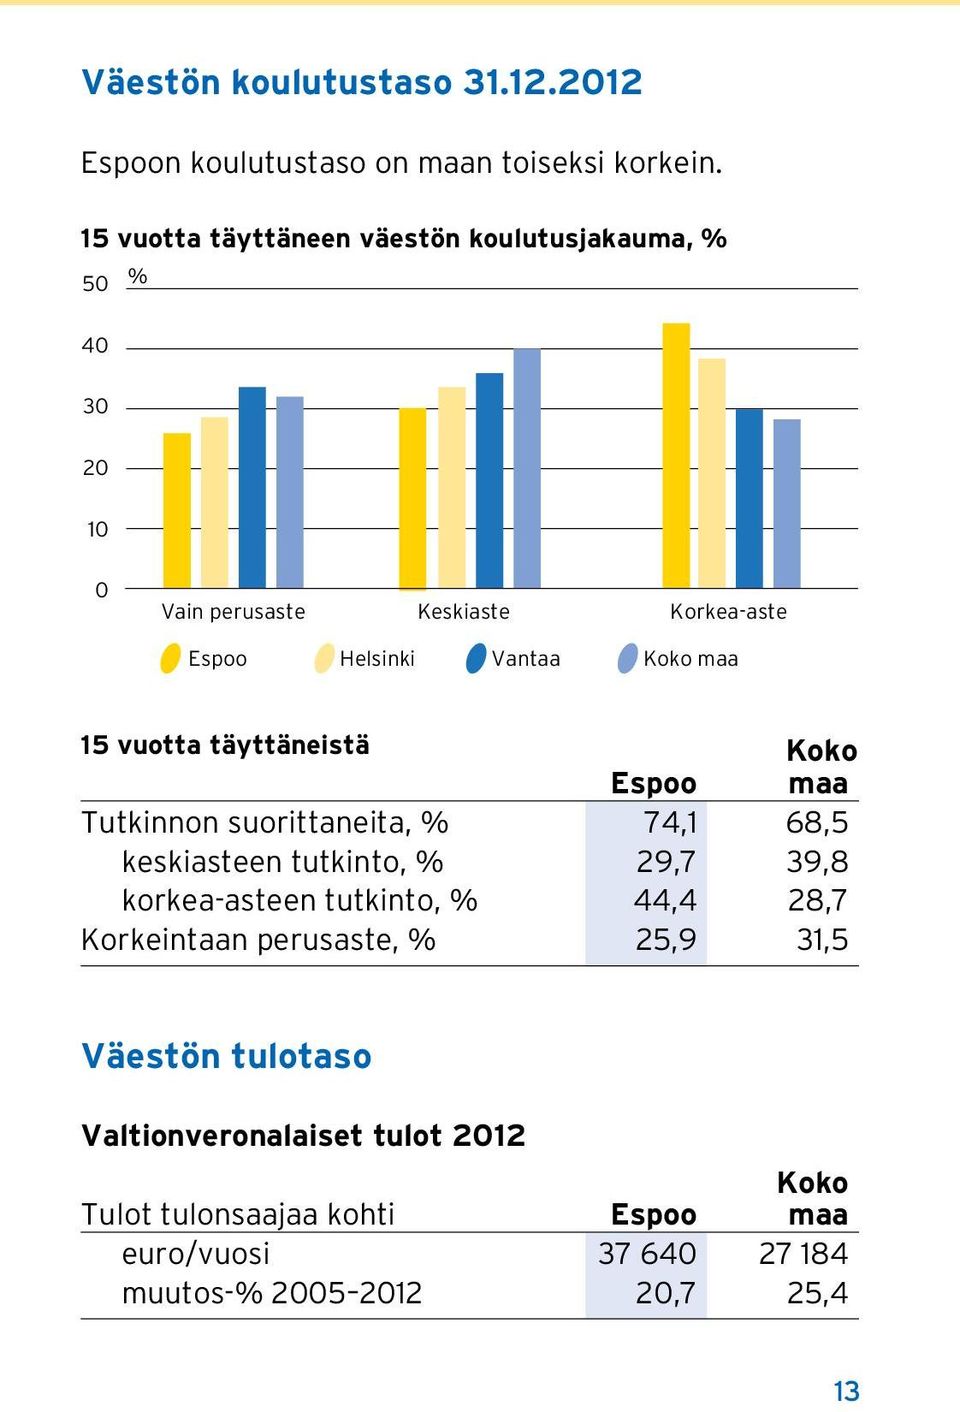 maa 15 vuotta täyttäneistä Koko Espoo maa Tutkinnon suorittaneita, % 74,1 68,5 keskiasteen tutkinto, % 29,7 39,8 korkea-asteen